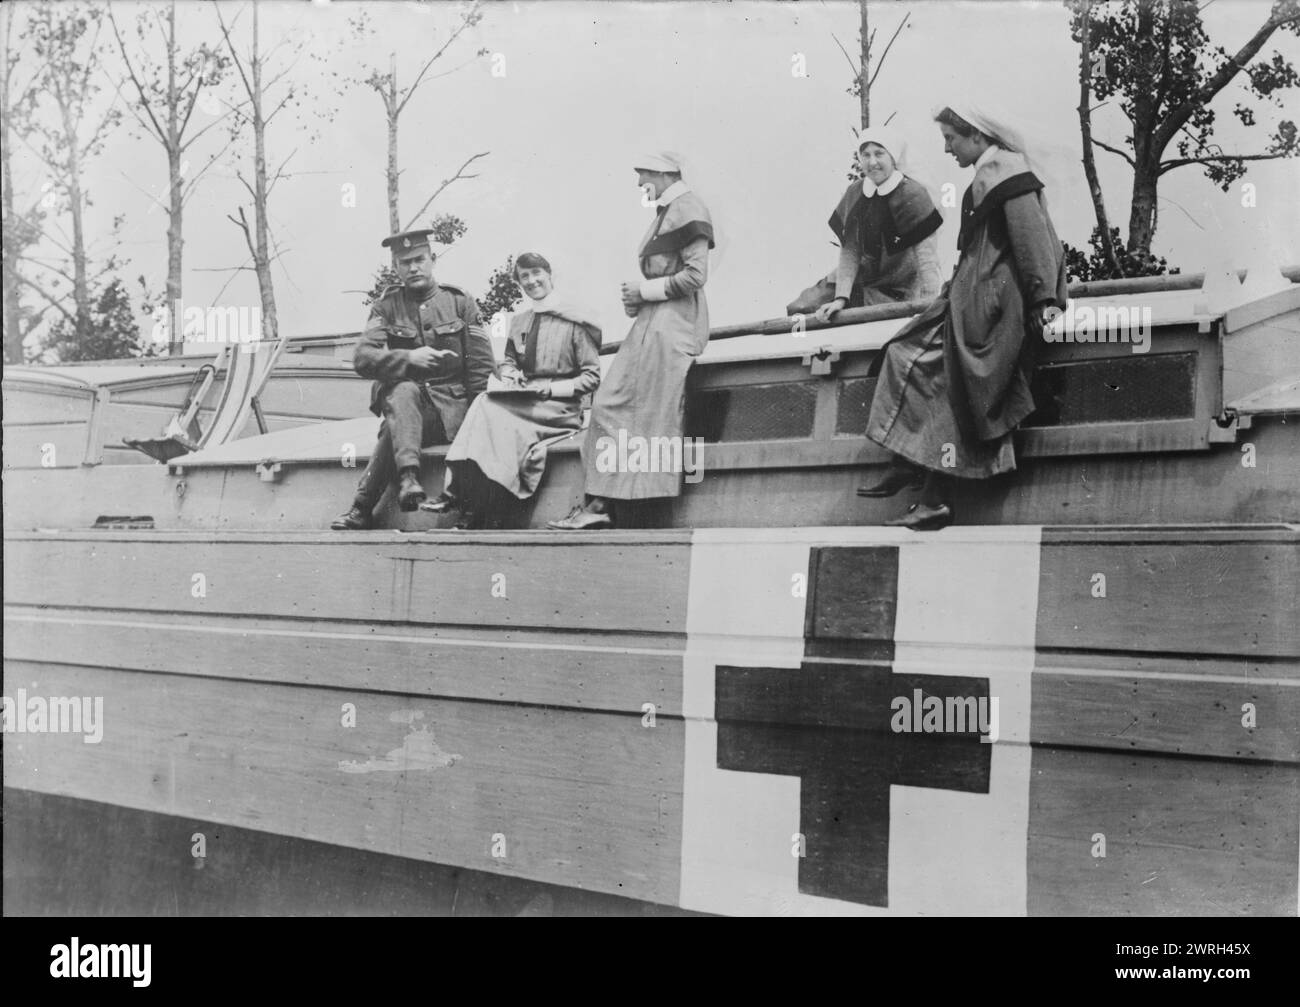 Infirmières britanniques sur une barge hospitalière, 19 juin 1917. Infirmière de la réserve impériale des soins infirmiers militaires de la Reine Alexandra (QAIMNSR), soeurs du Service infirmier des Forces territoriales (TFNS) et sergent du Royal Army Medical corps (RAMC) à bord d'une barge hospitalière, Péronne, France, le 22 juin 1917 pendant la première Guerre mondiale Banque D'Images